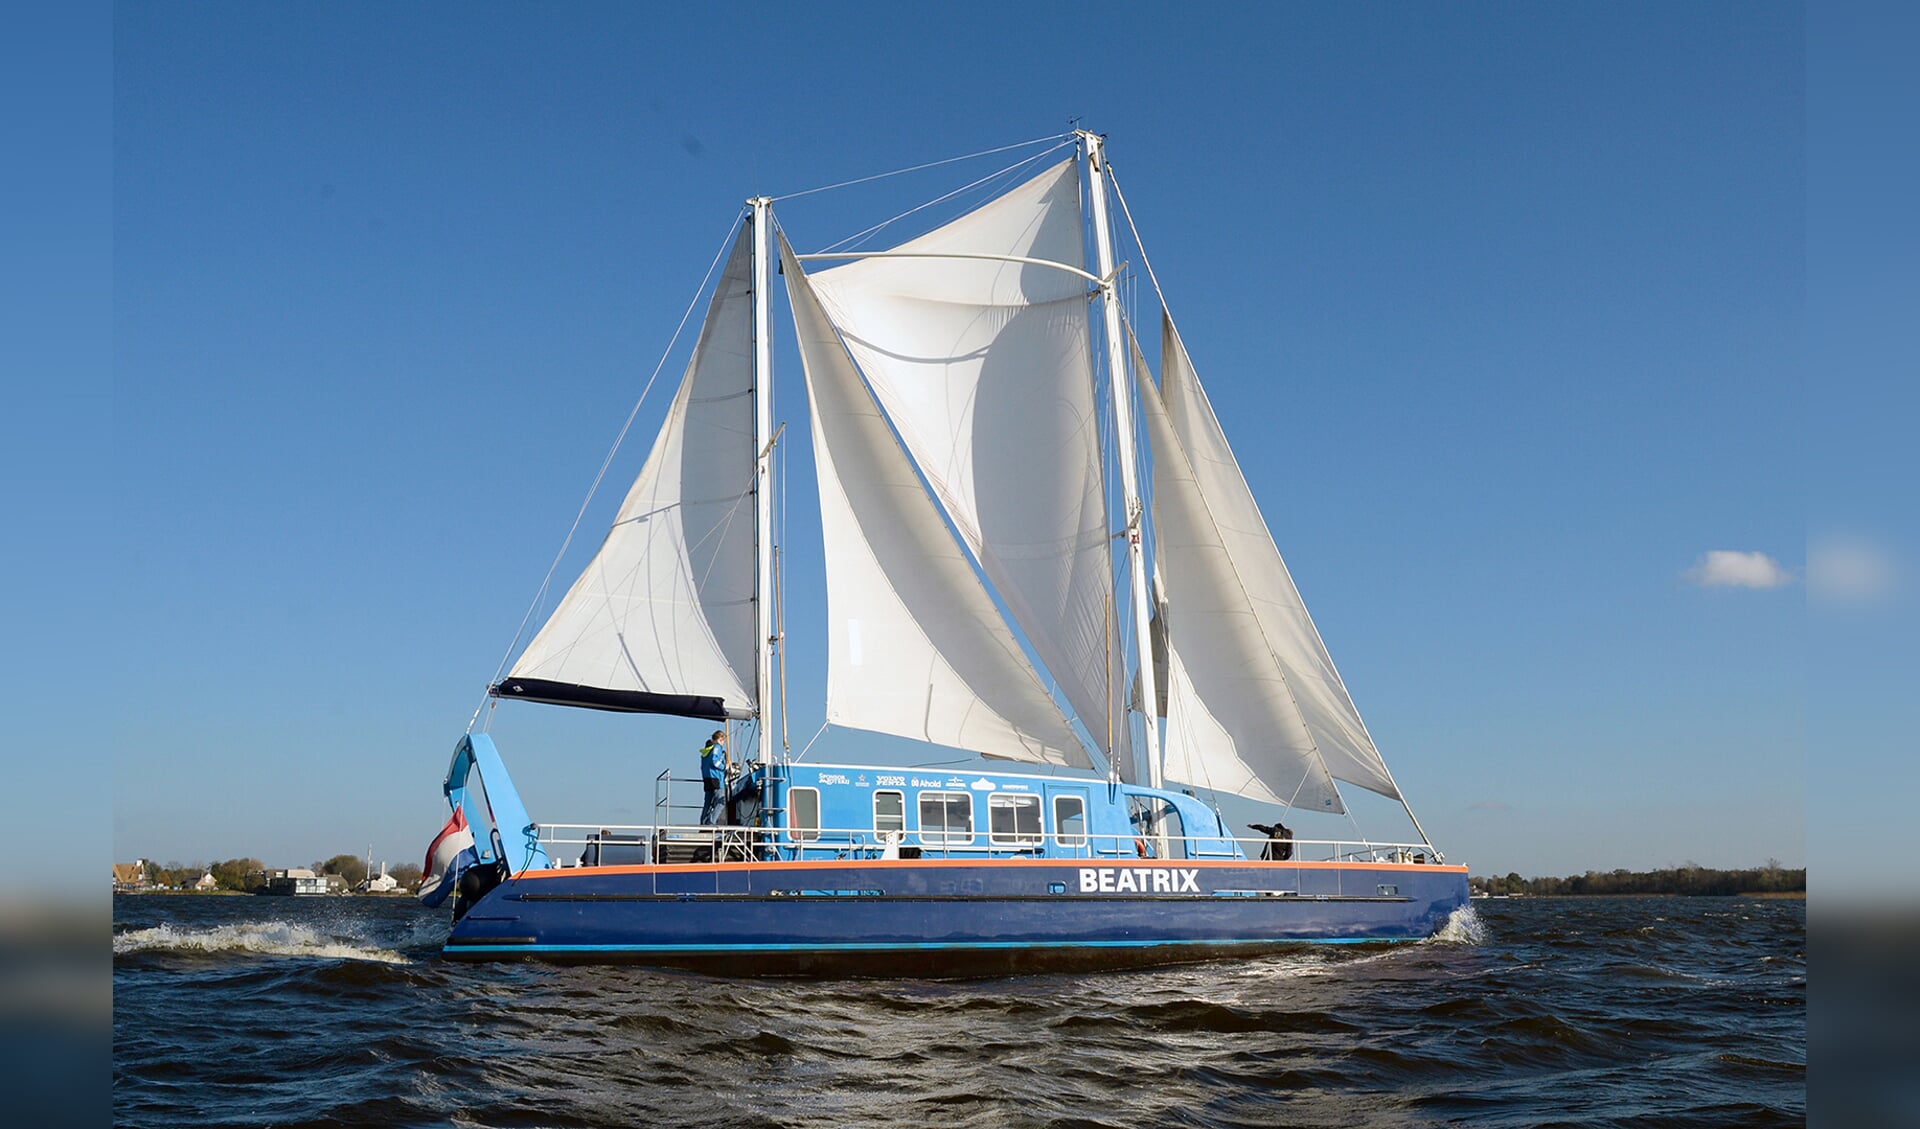 Catamaran ‘Beatrix